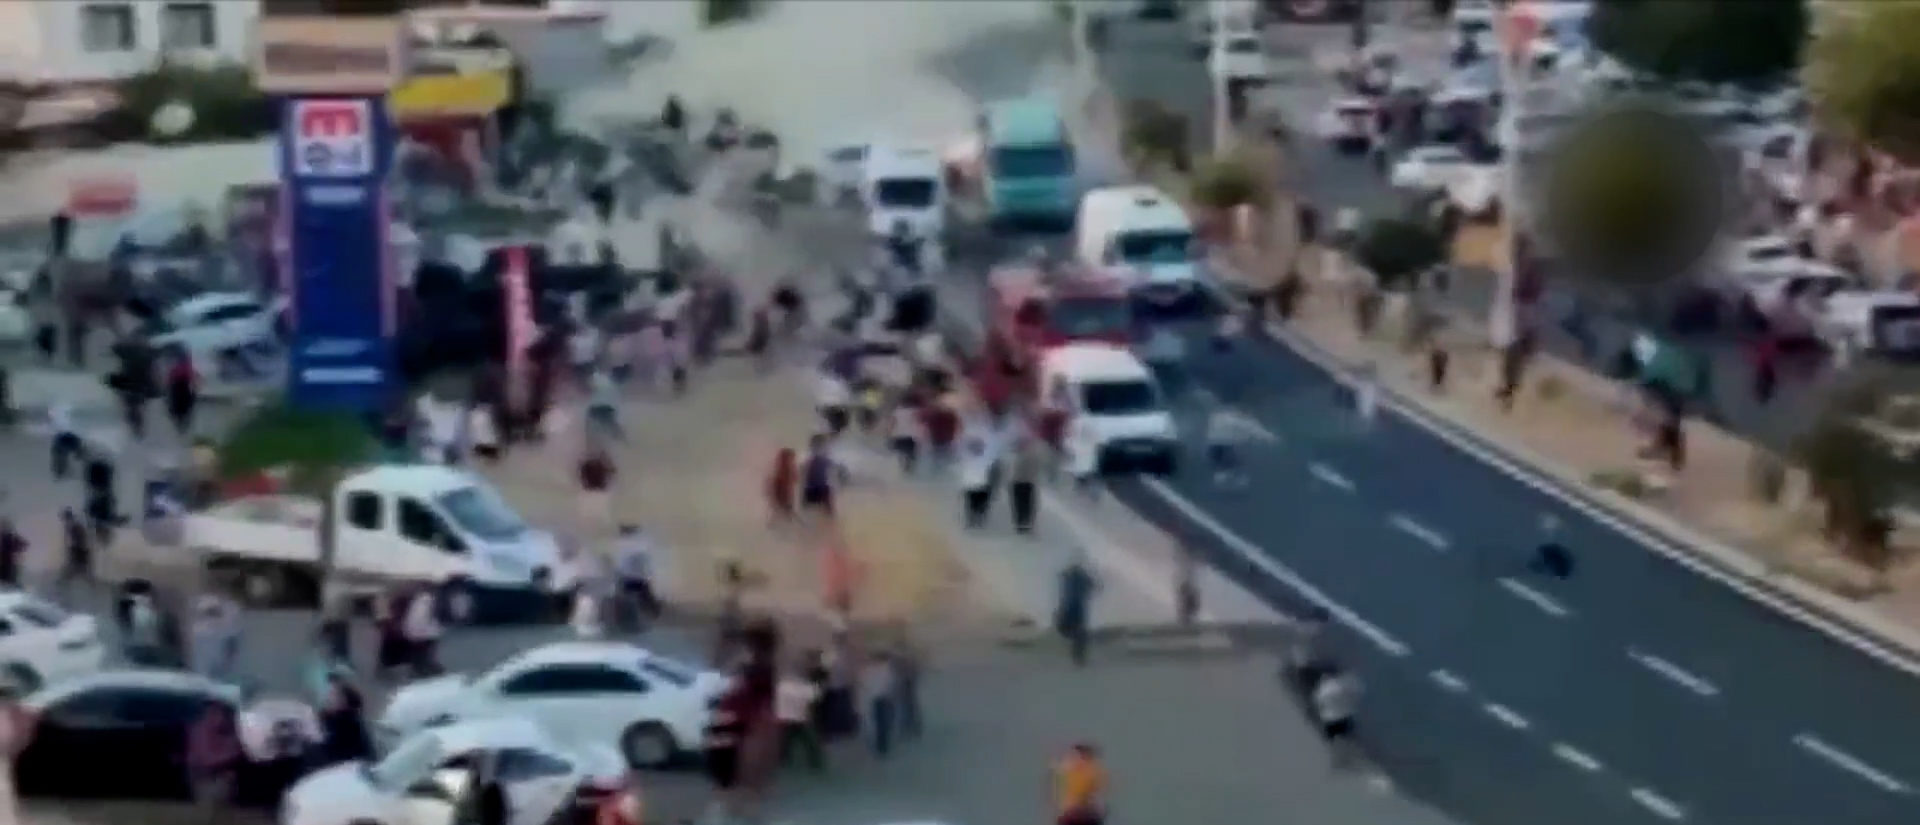 Τουρκία: Φορτηγό χωρίς φρένα έπεσε σε πλήθος στην πόλη Ντερίκ – Τουλάχιστον 16 άνθρωποι σκοτώθηκαν